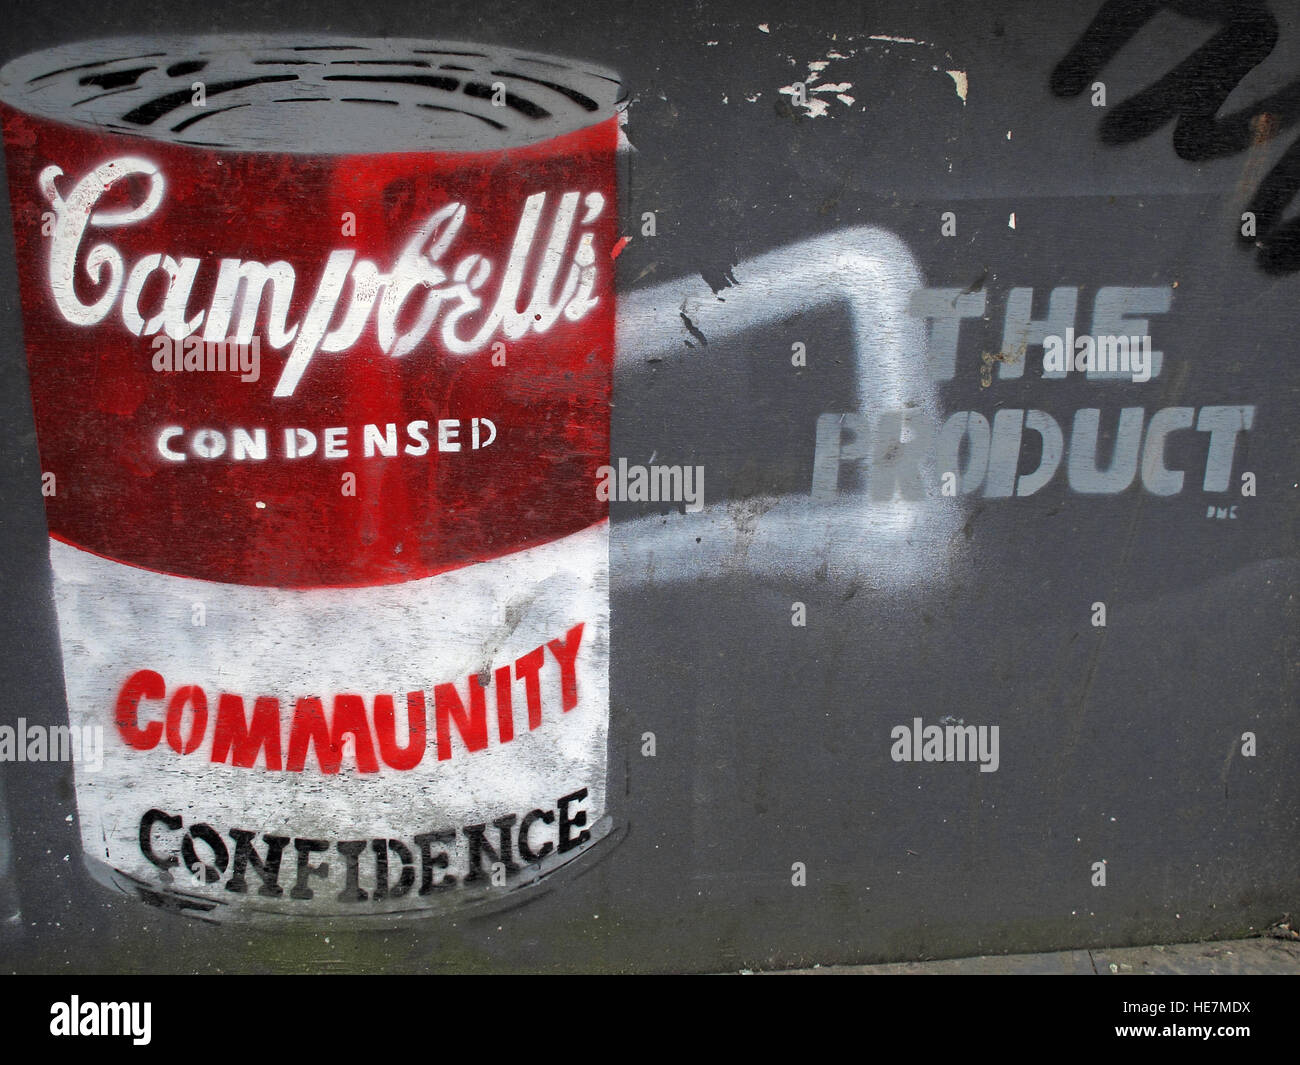 Fiducia nella comunità, Campbells, zuppa di lattina, graffiti a Belfast Garfield St Centro città, Irlanda del Nord, Regno Unito Foto Stock